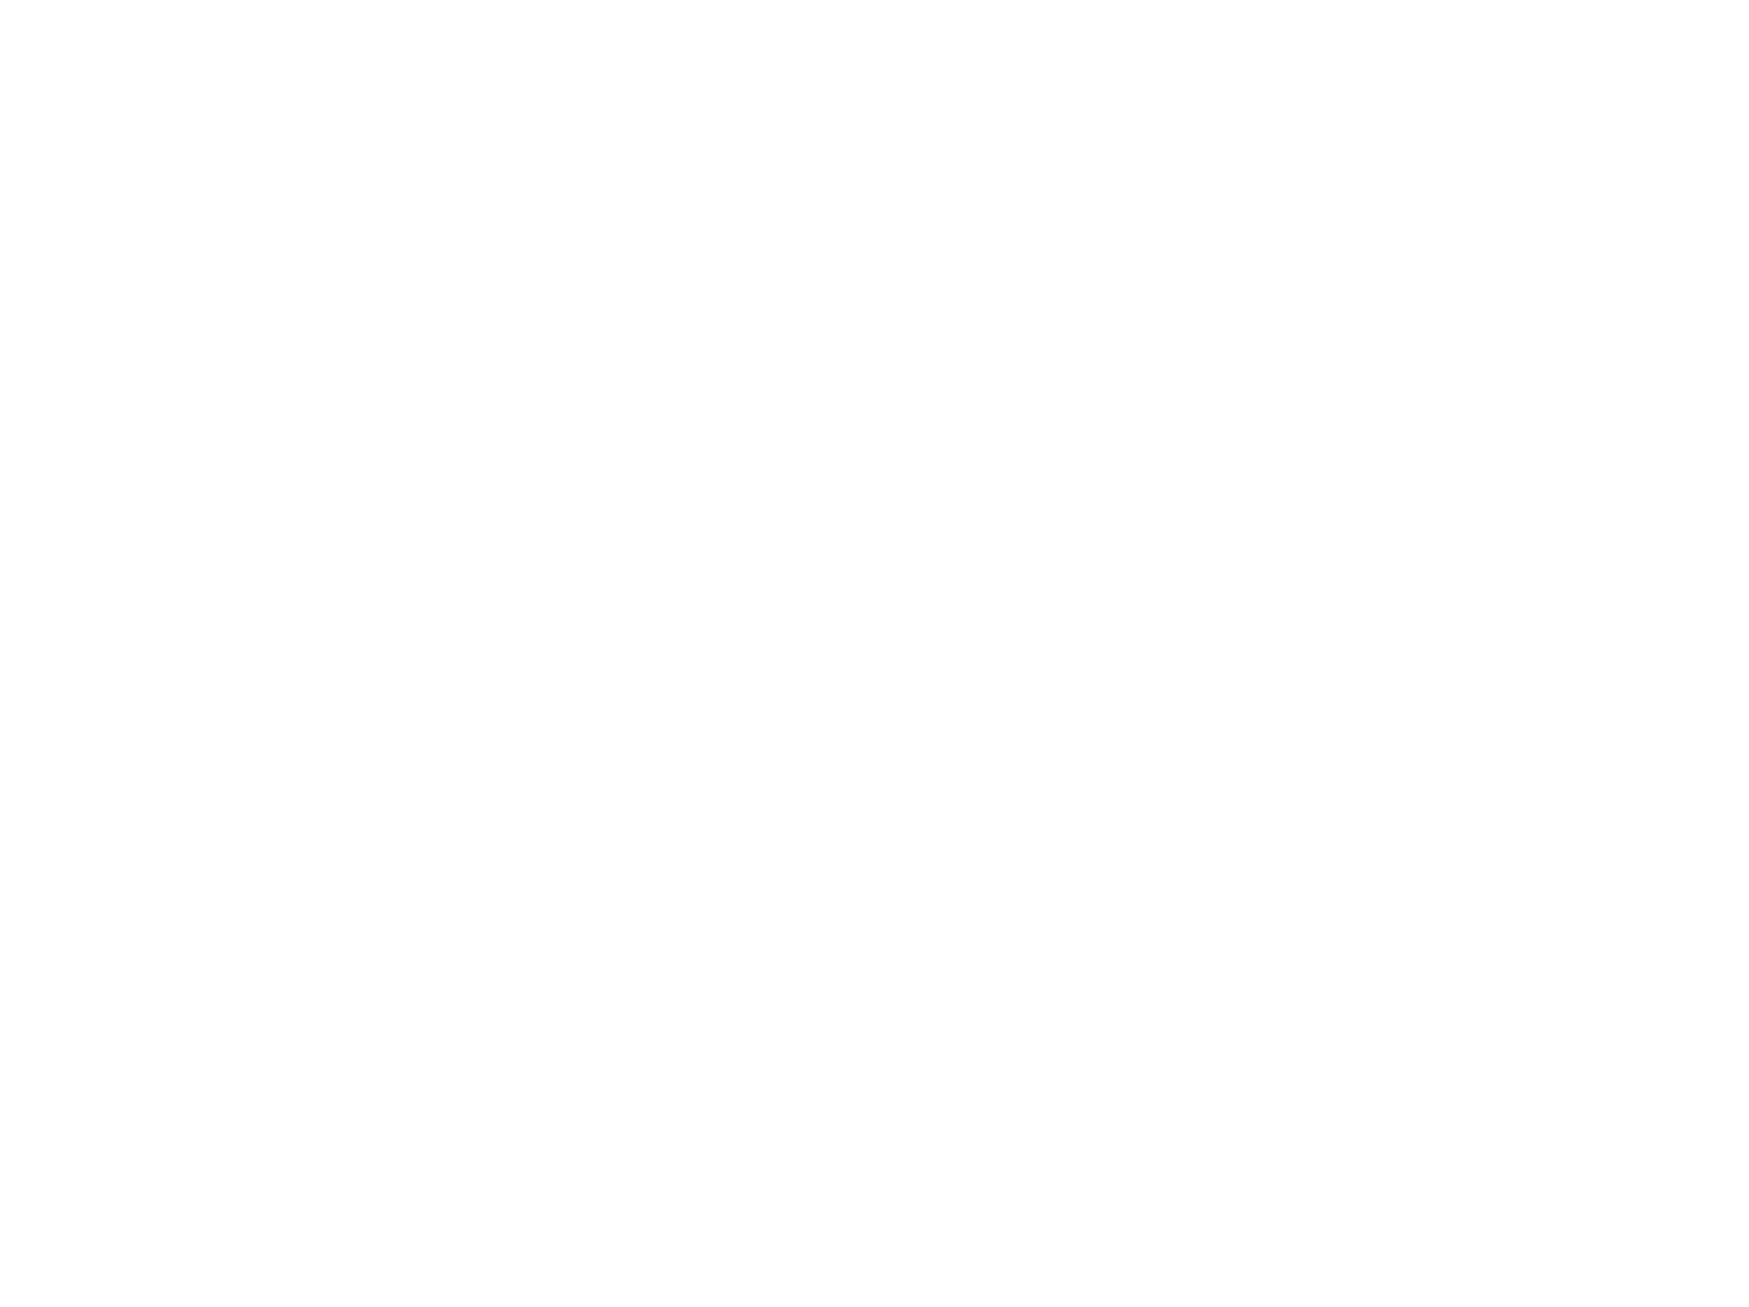 Michelangelo's Sistine Chapel: New York City Exhibit Logo